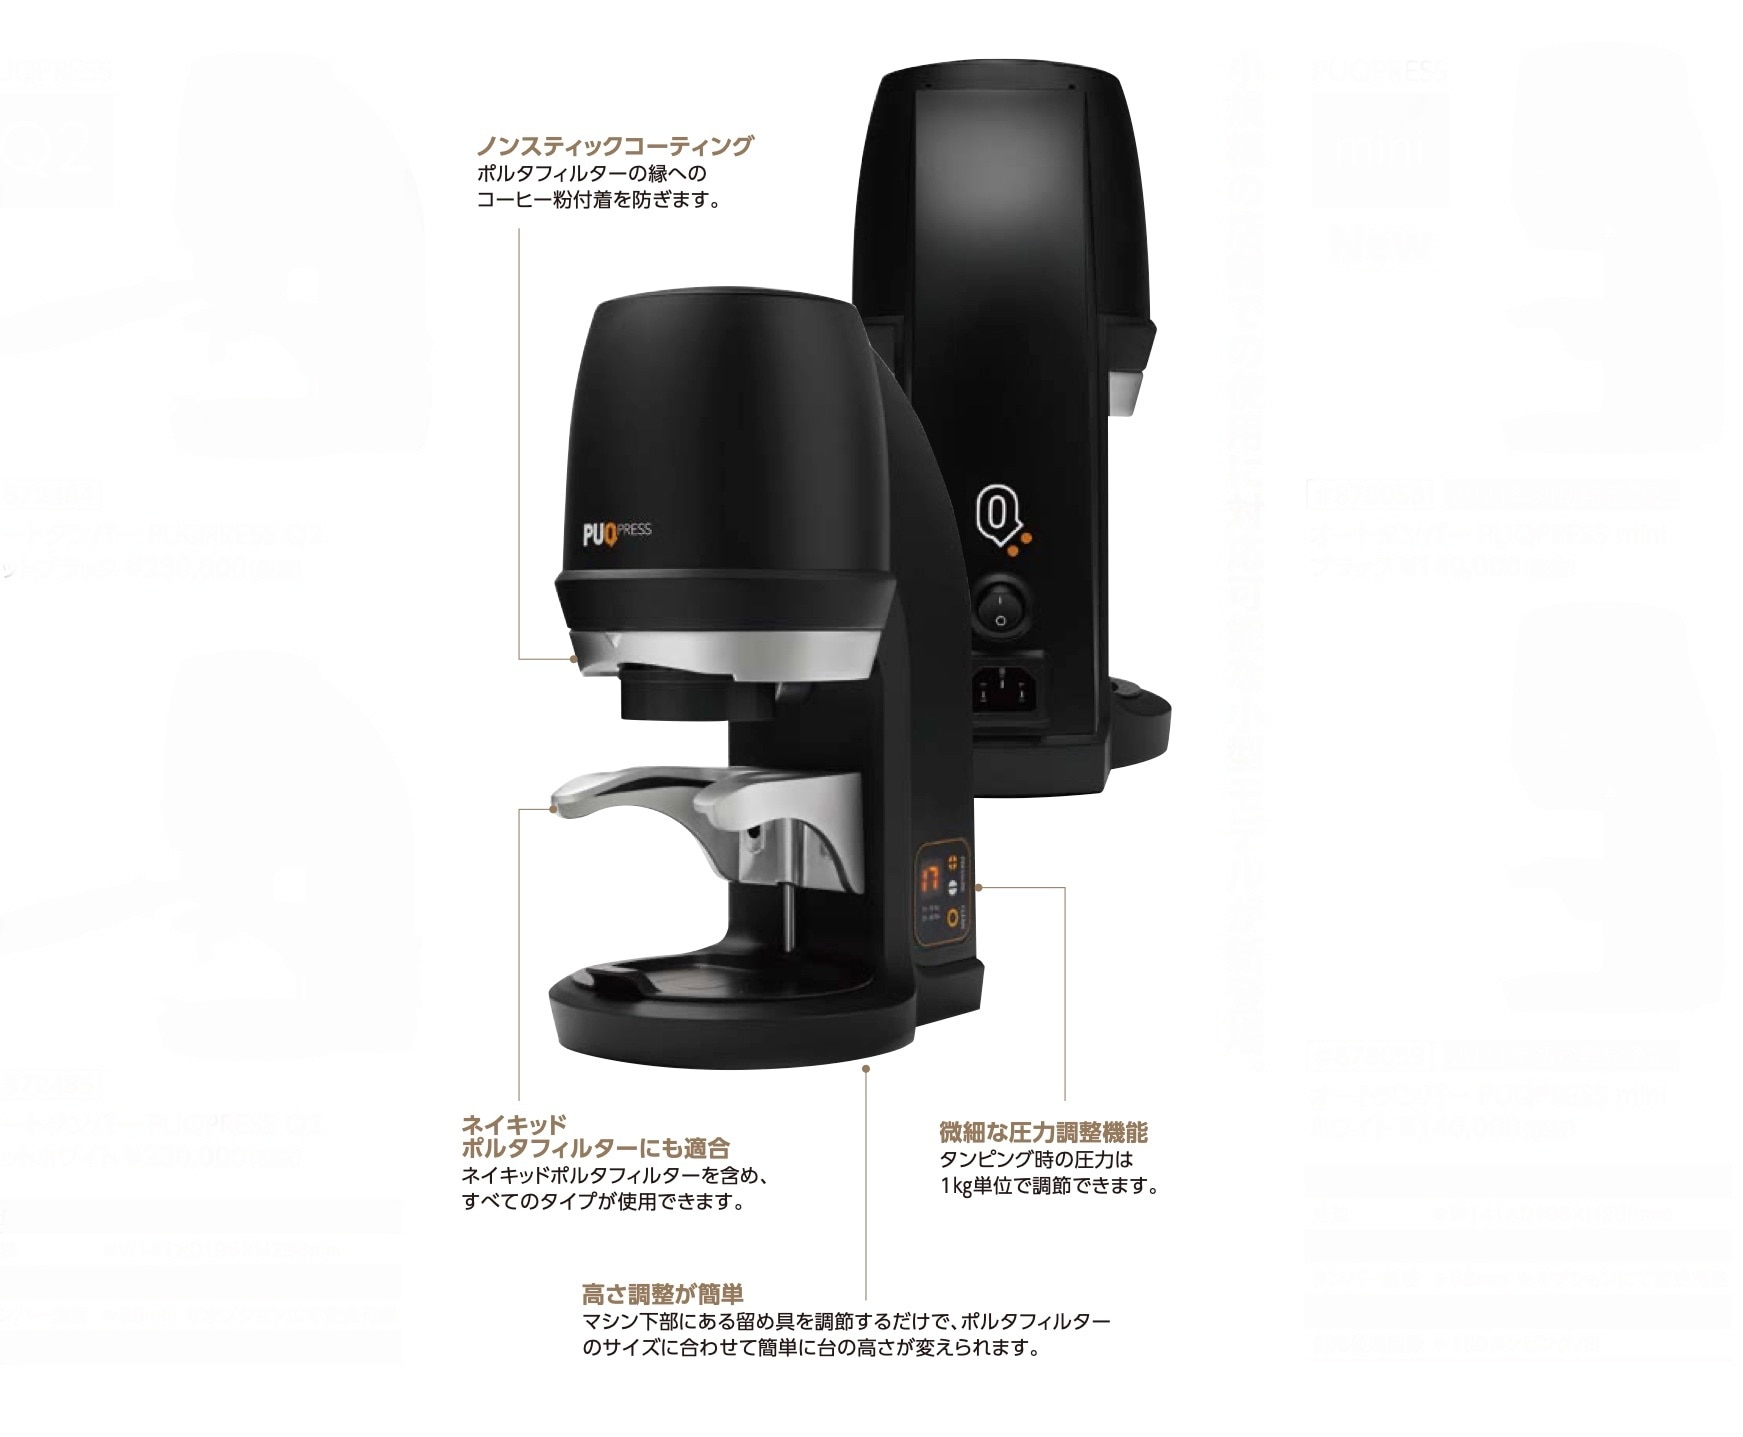 3年保証』 コーヒー用品 珈琲器具のFaCoffeePUQ PRESS オートタンパー Q2